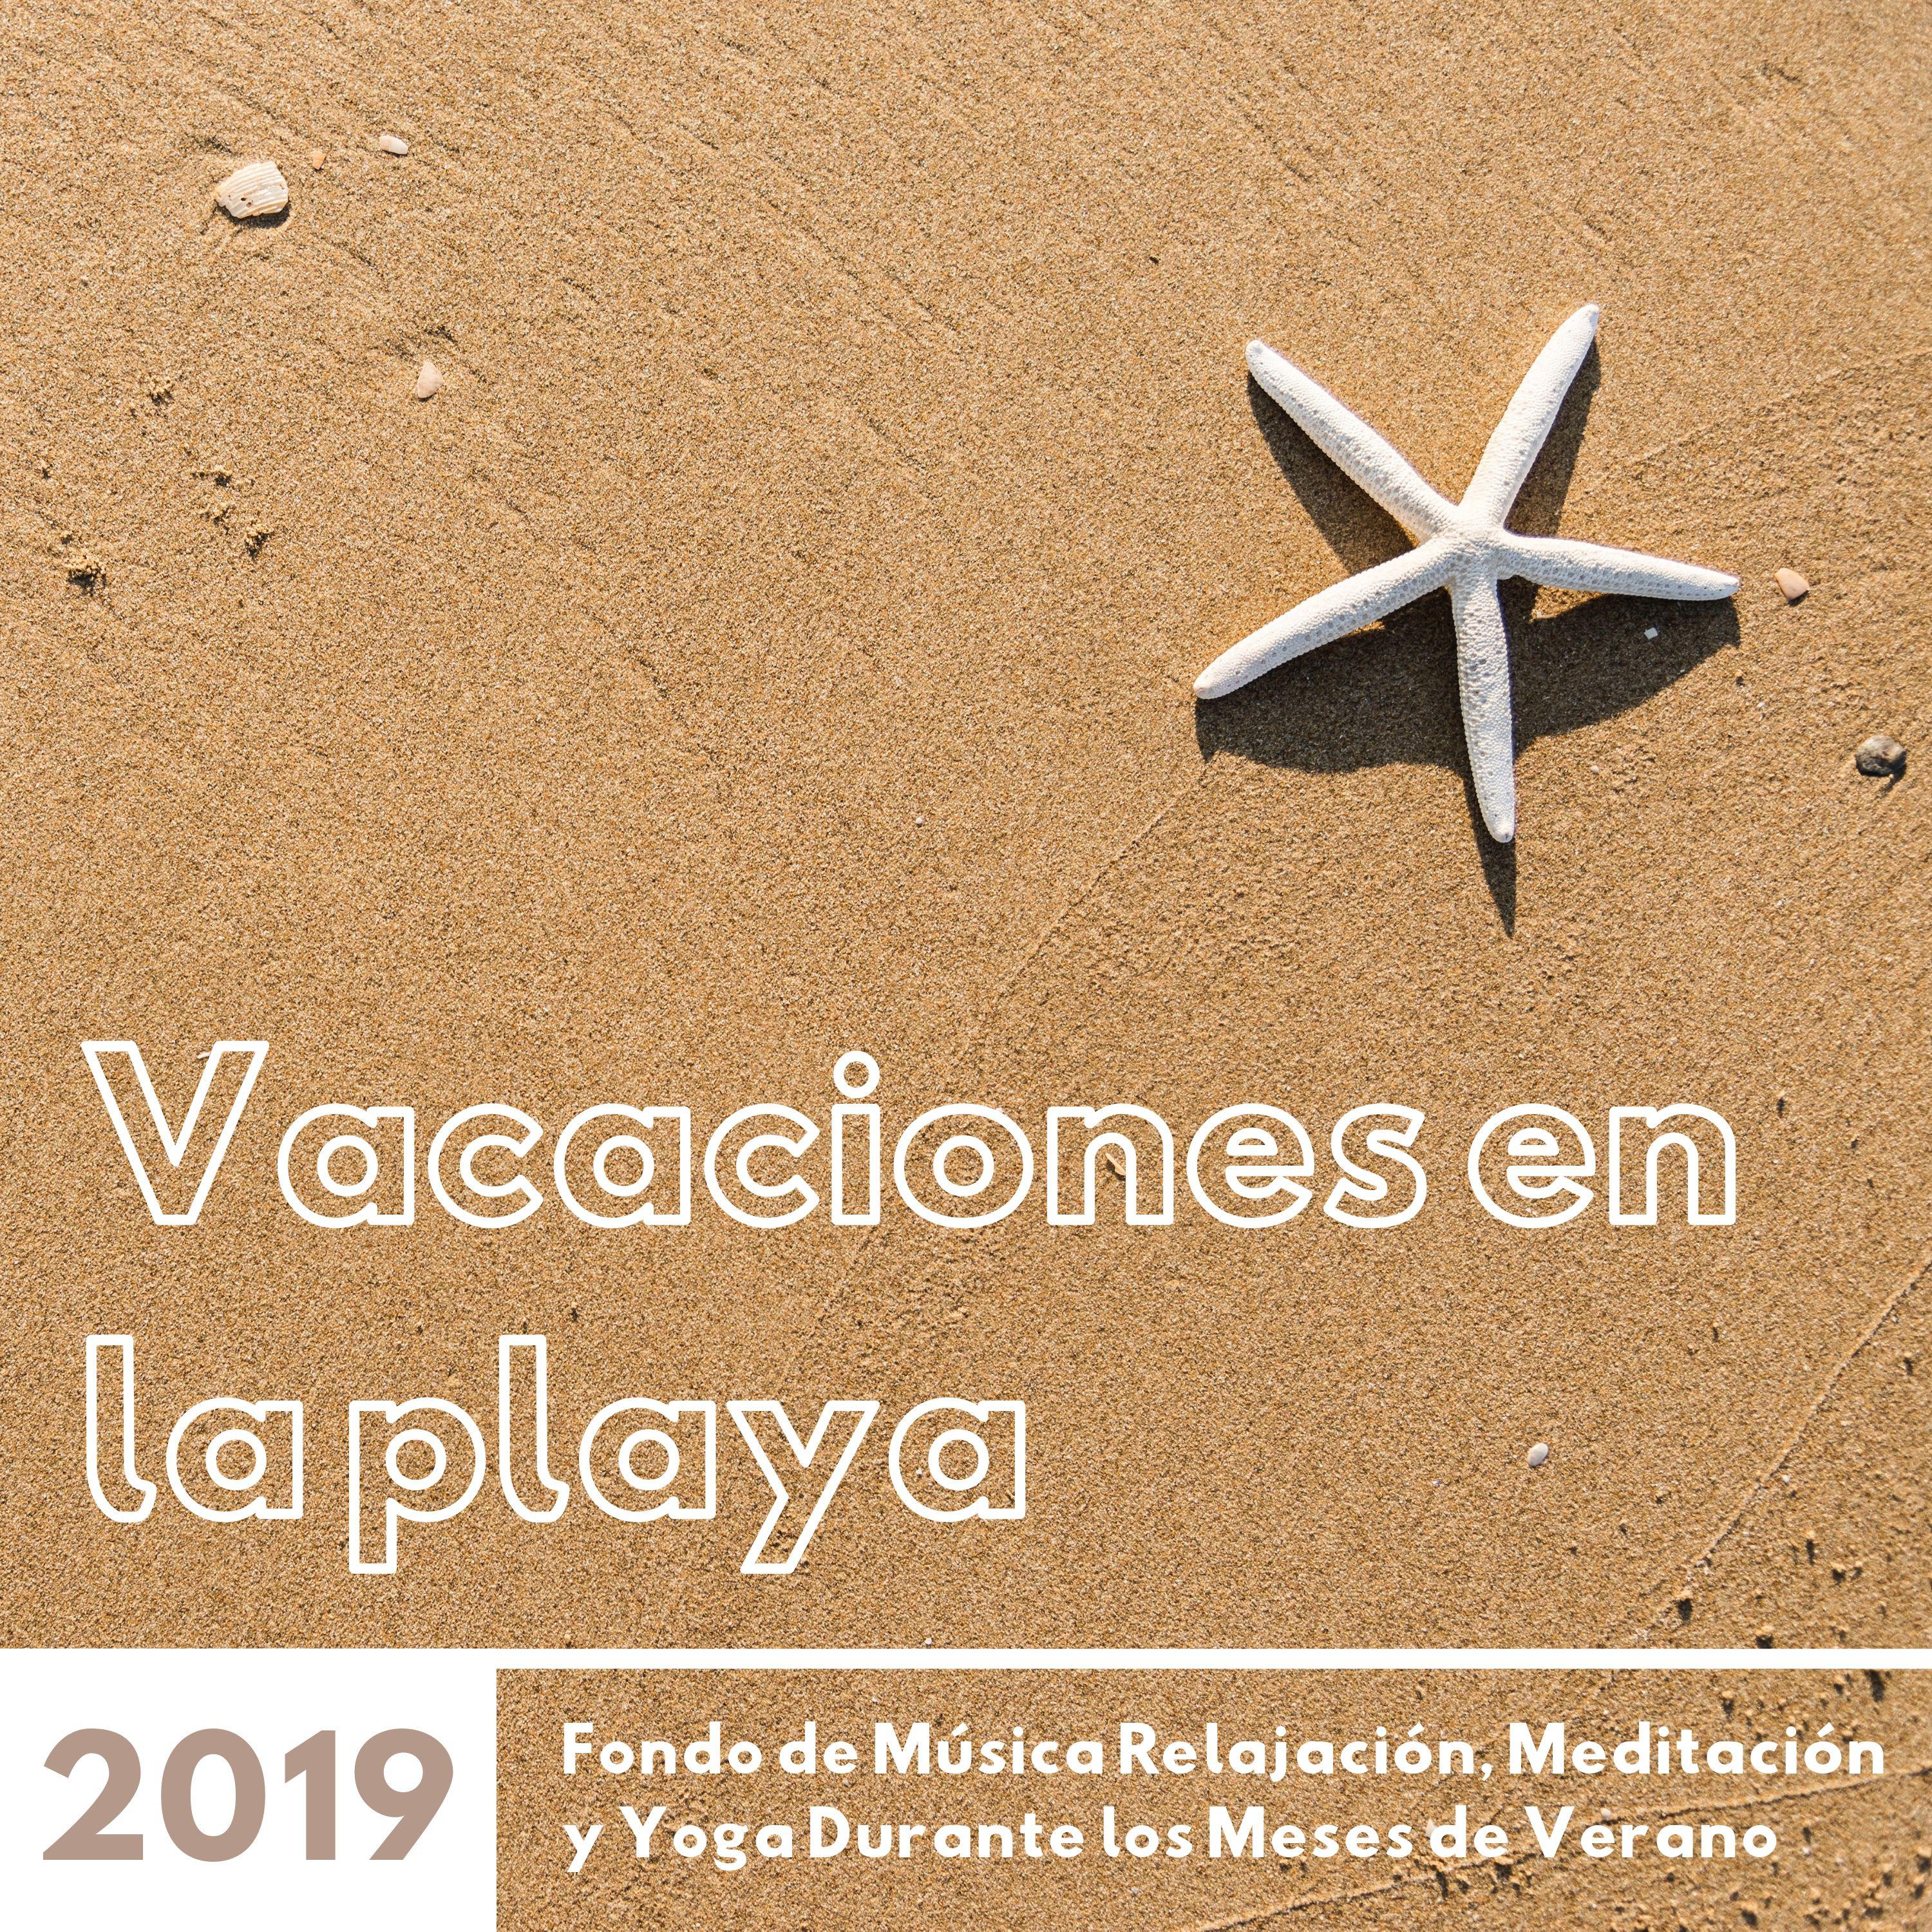 Vacaciones en la Playa 2019  Fondo de Mu sica Relajacio n, Meditacio n y Yoga Durante los Meses de Verano